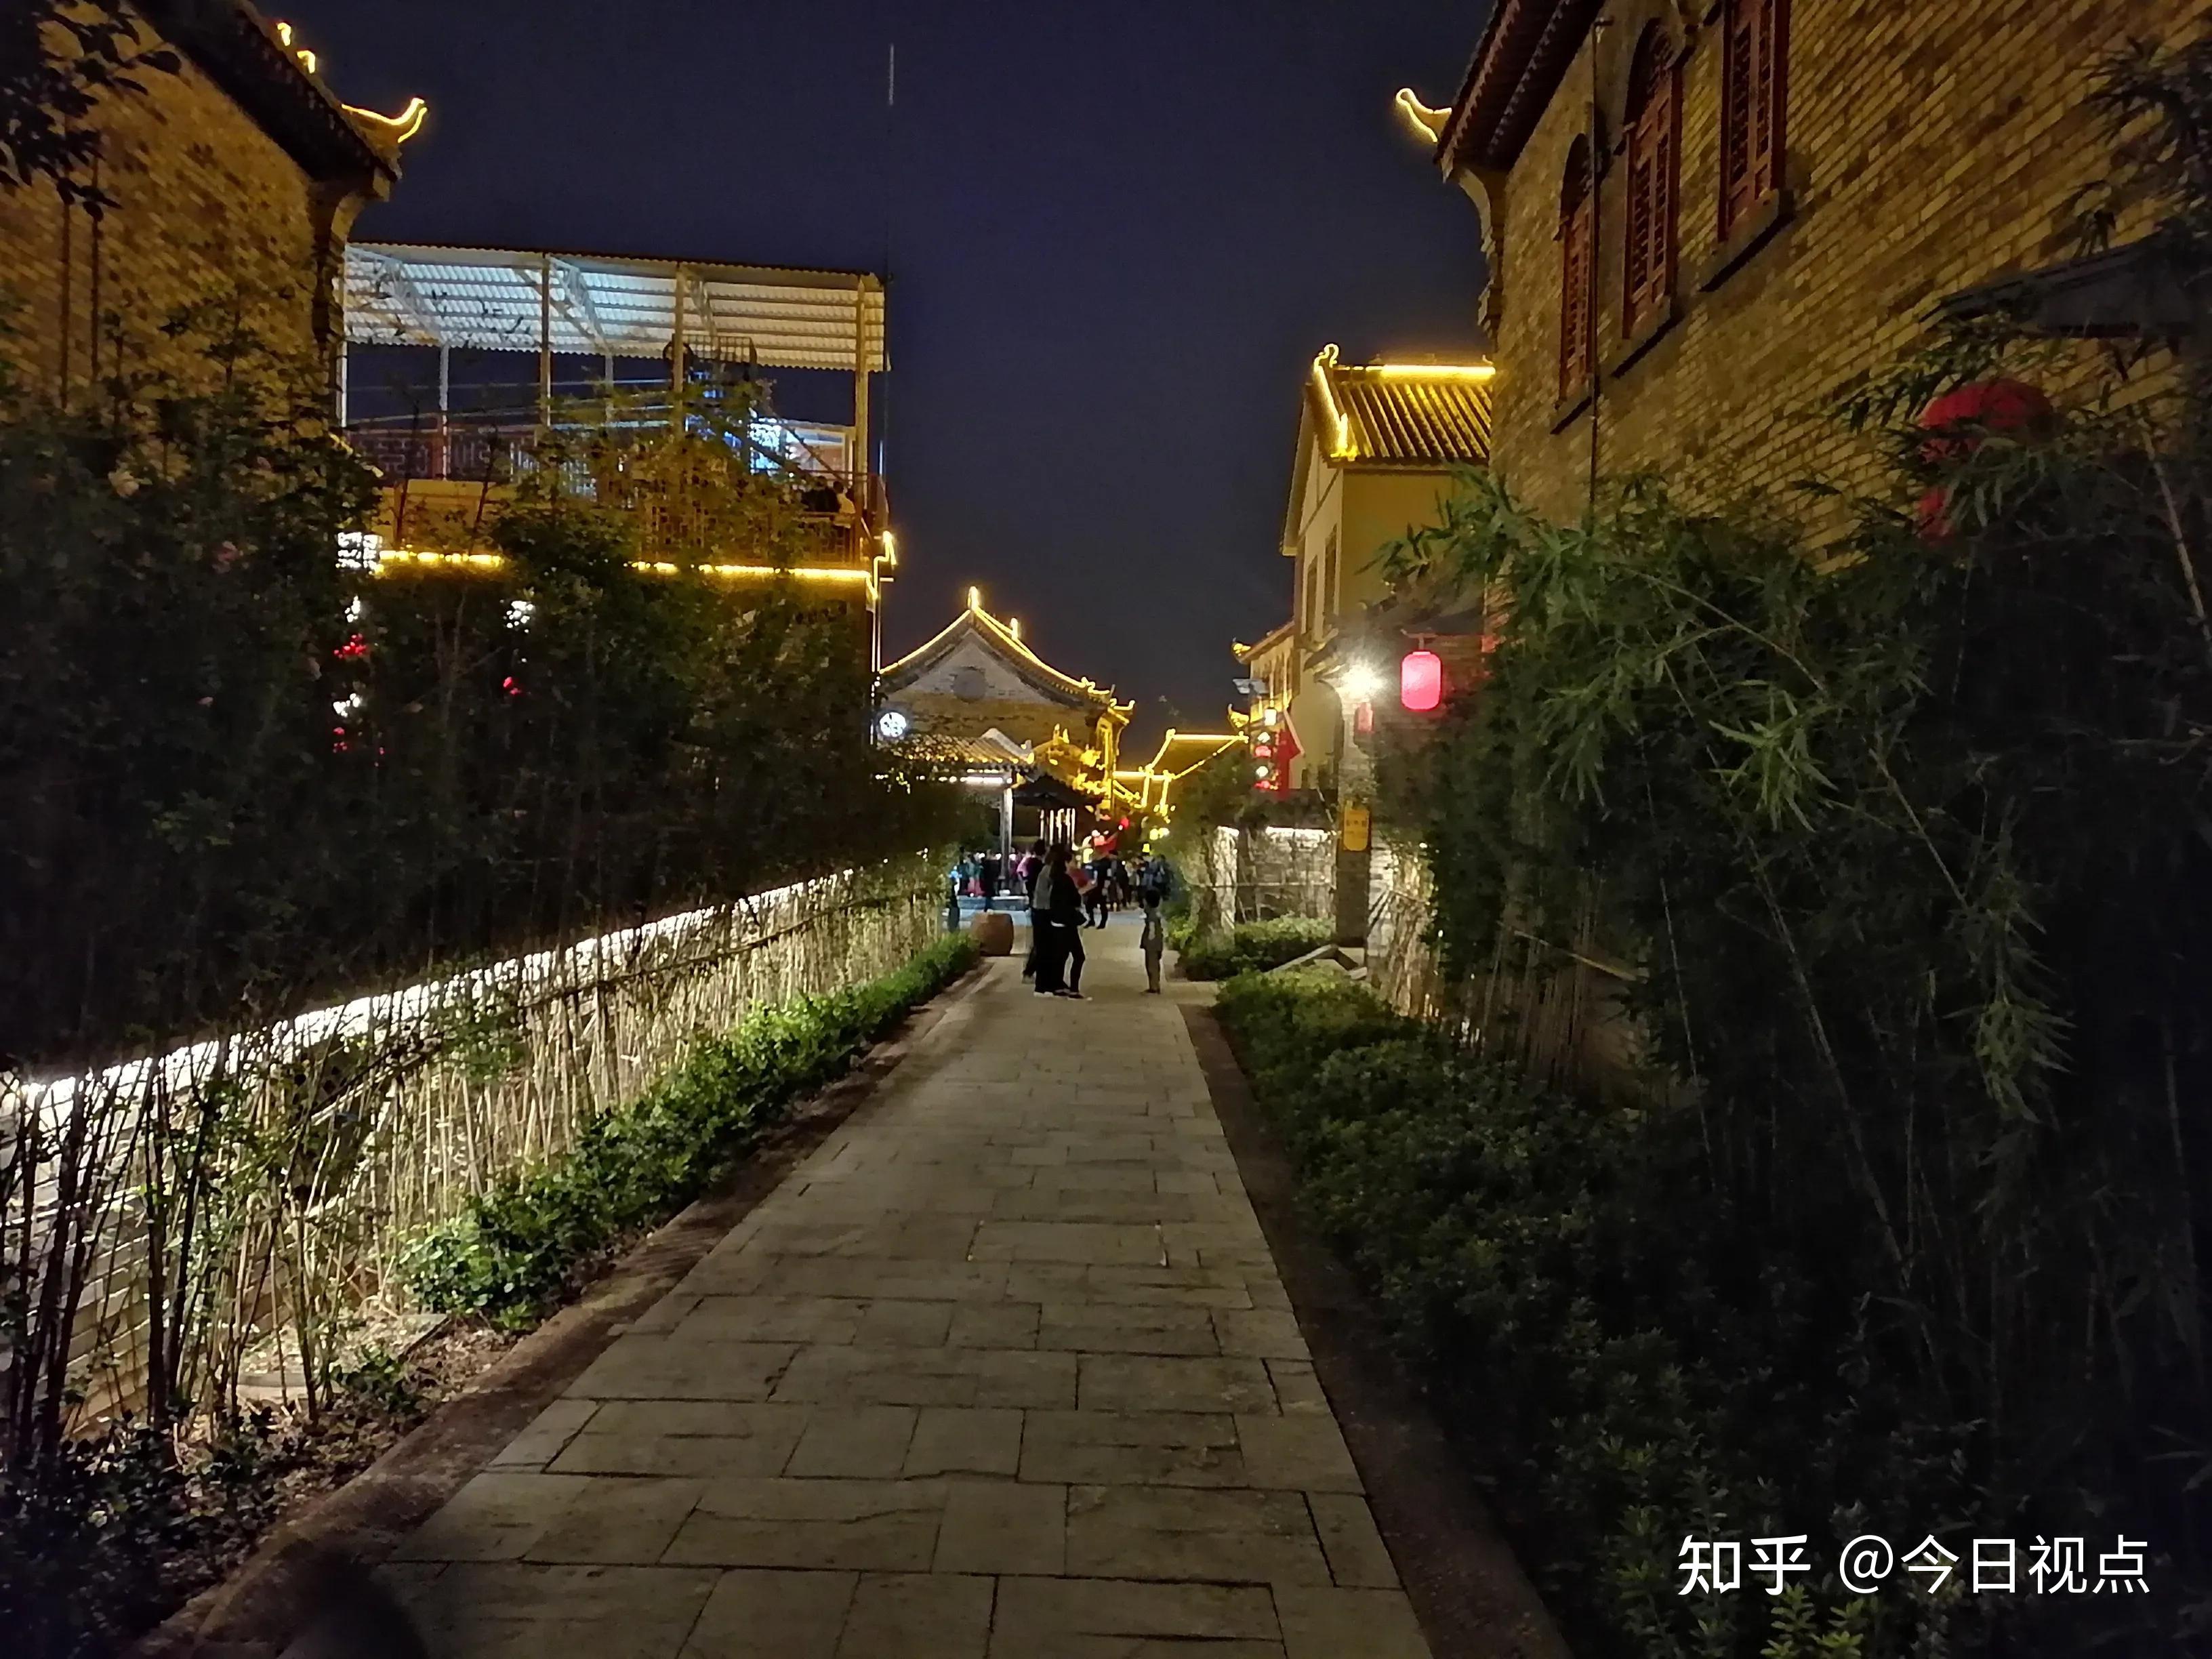 伊川龙凤山古镇夜景图片